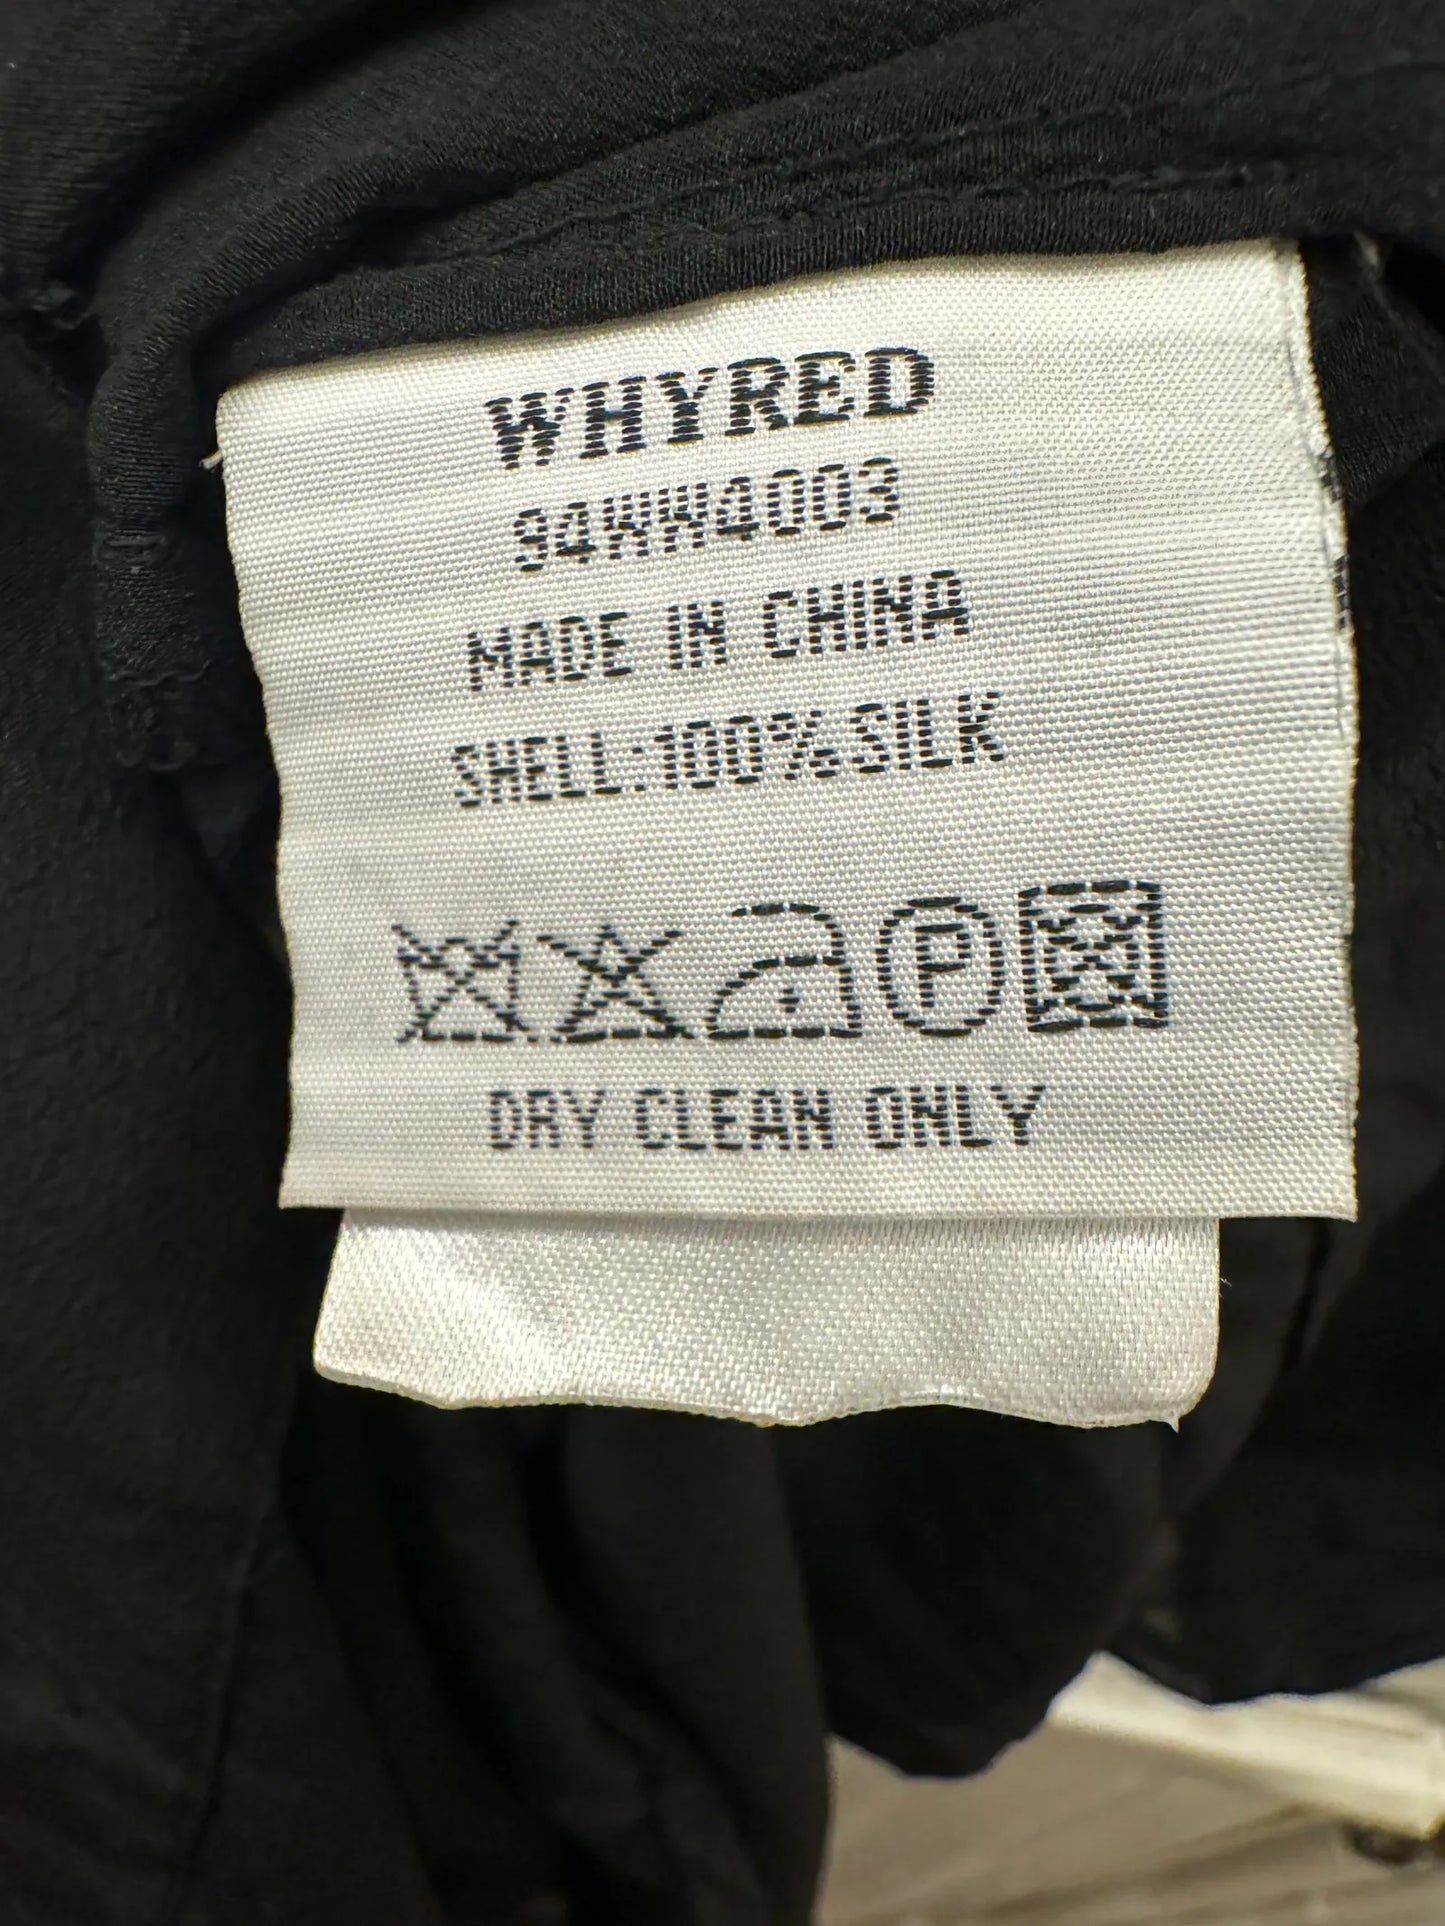 Whyred-sidenklänning